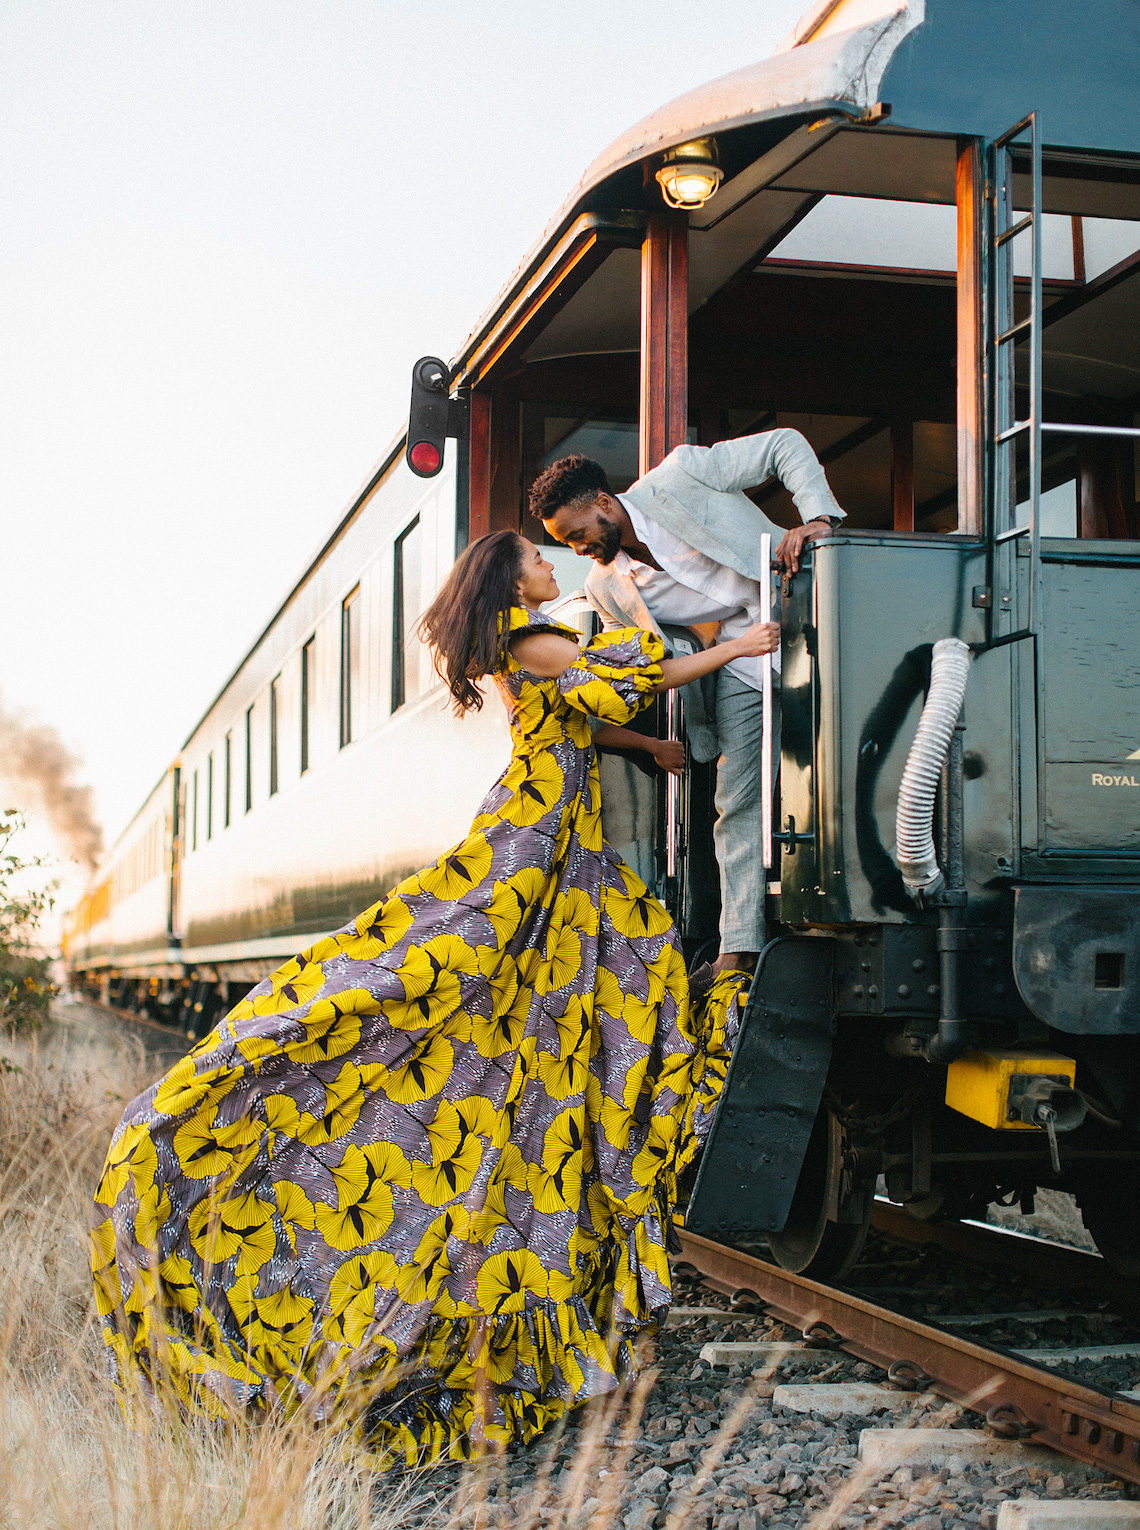 Zambia Honeymoon and Destination Wedding Guide Love From Mwai Exalt Africa Joy Proctor Design Stepan Vrzala Exalt Africa Bridal Musings 14 - Tại sao bạn nên xem xét châu Phi cho đám cưới điểm đến của bạn